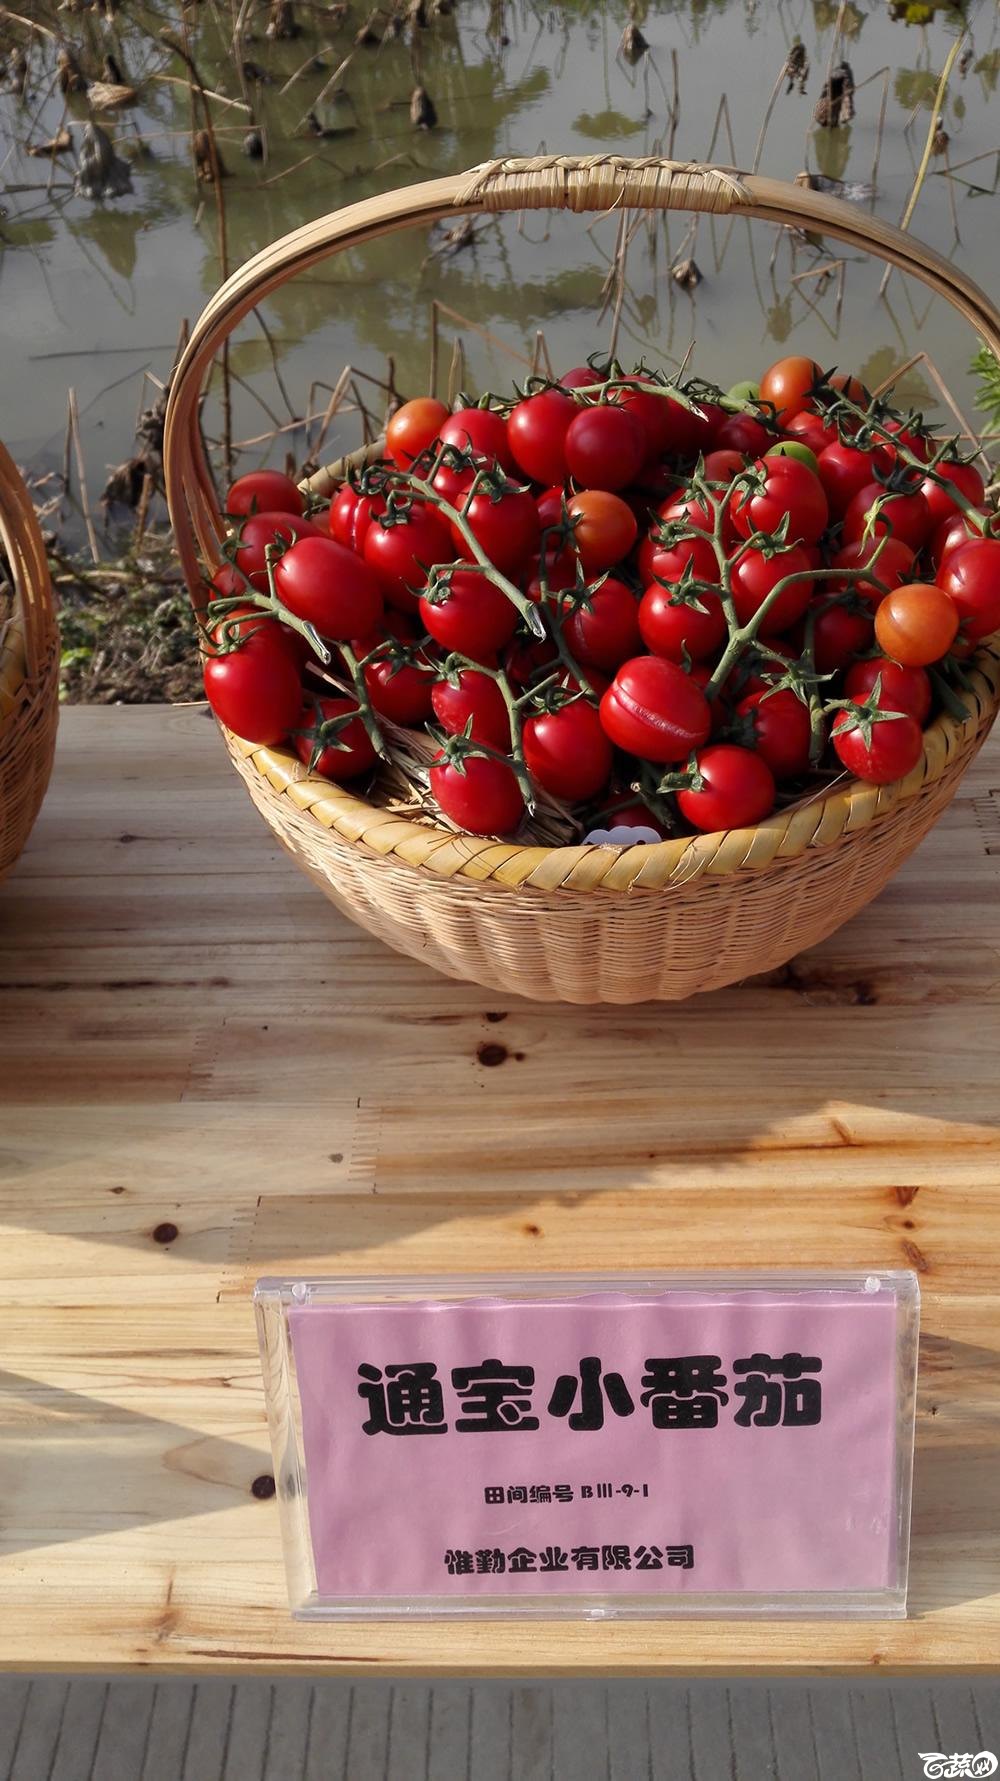 2014年12月10号广州市农科院南沙秋季蔬菜新品种展示会_番茄_036.jpg